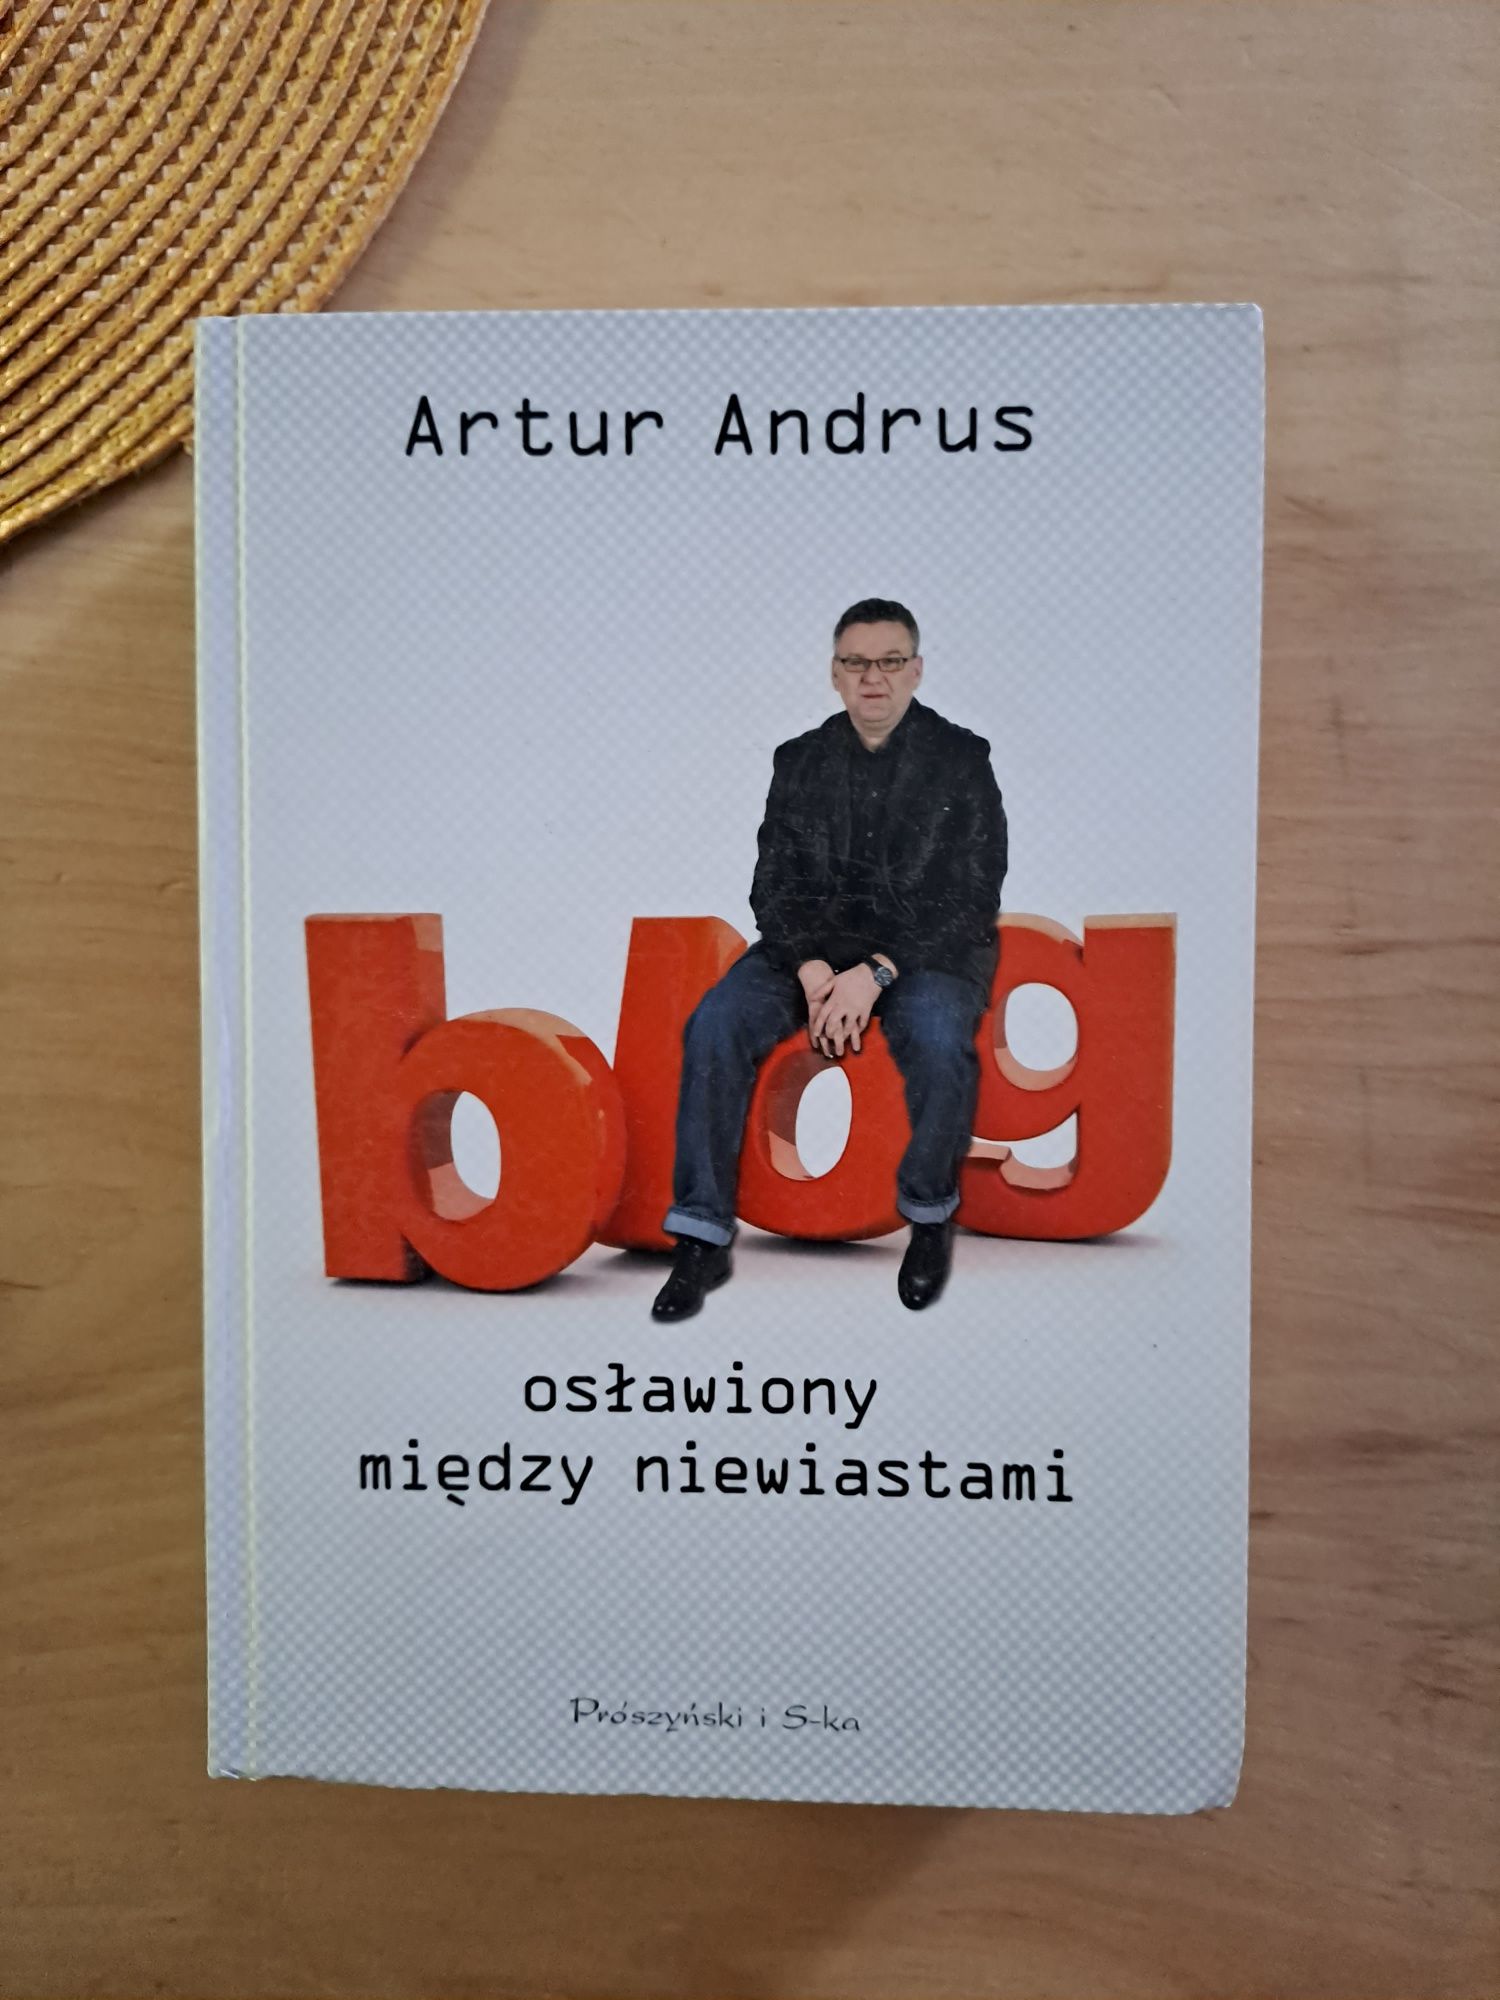 Blog między niewiastami Artur Andrus